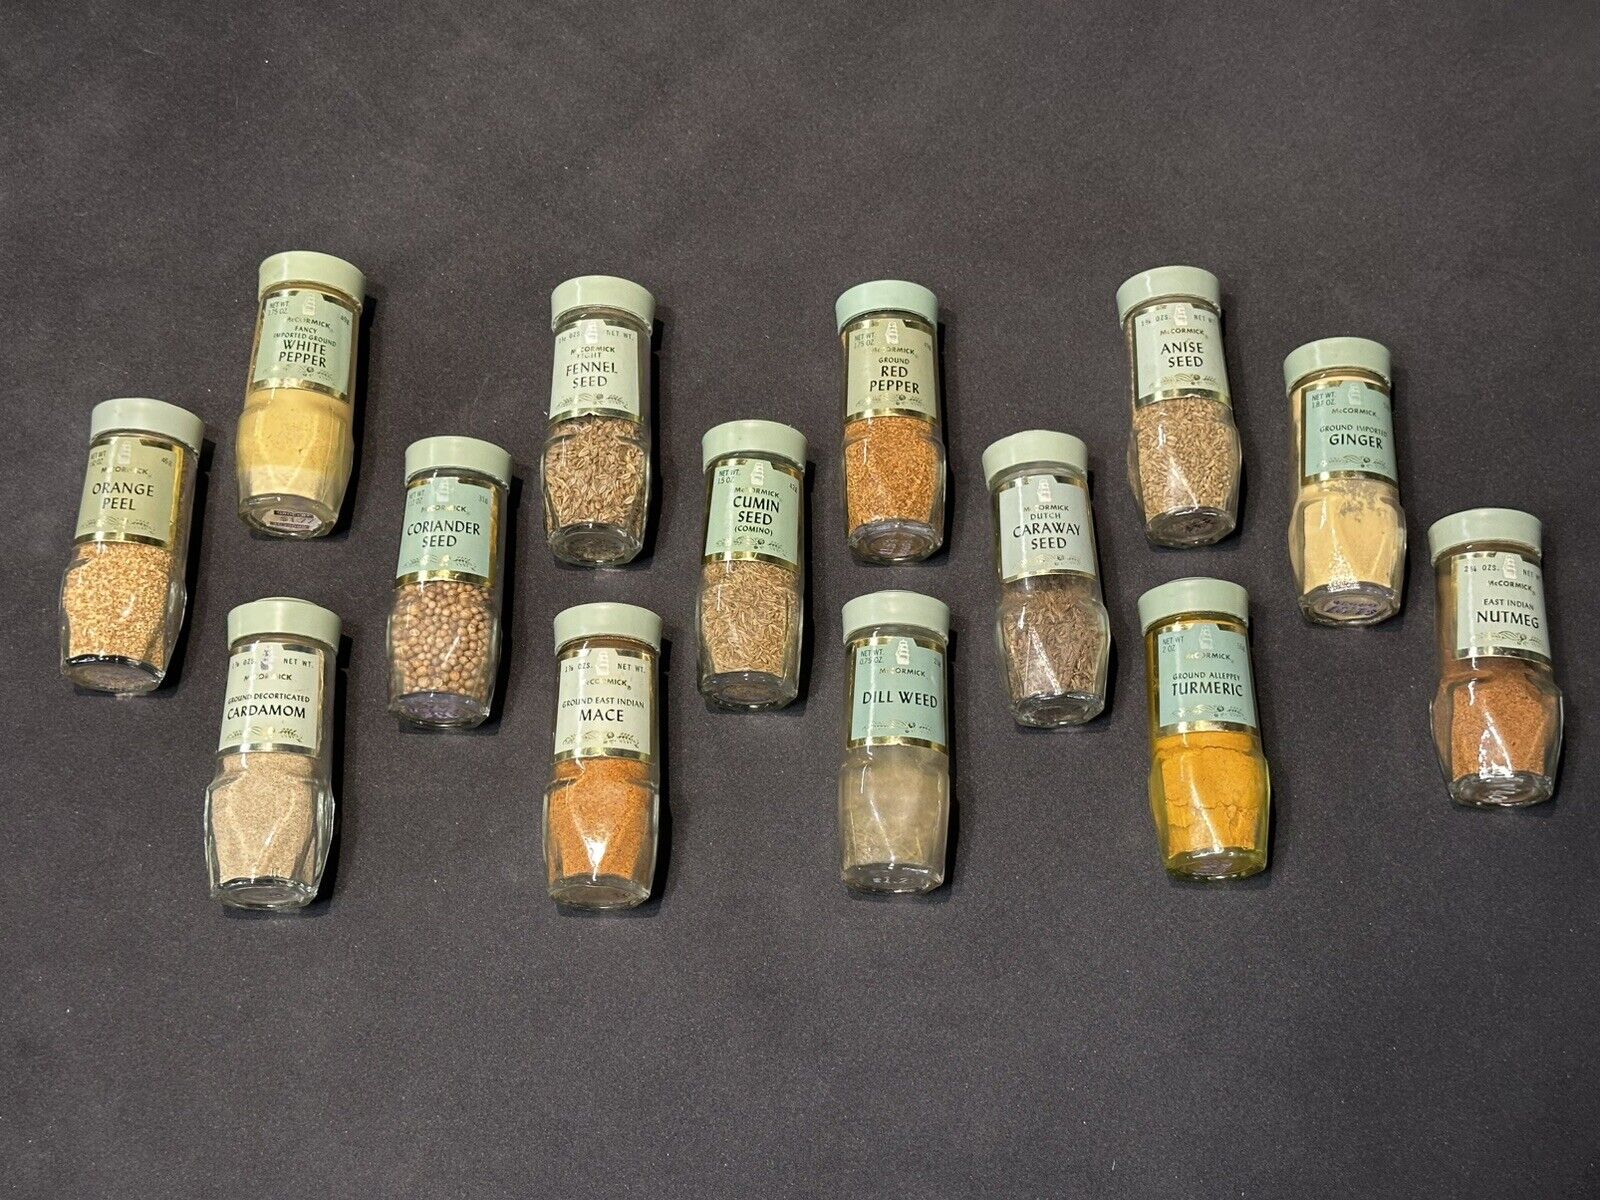 14 Schilling McCormick Spice Jars Bottles - Vintage Sage Green Lids 1970’s